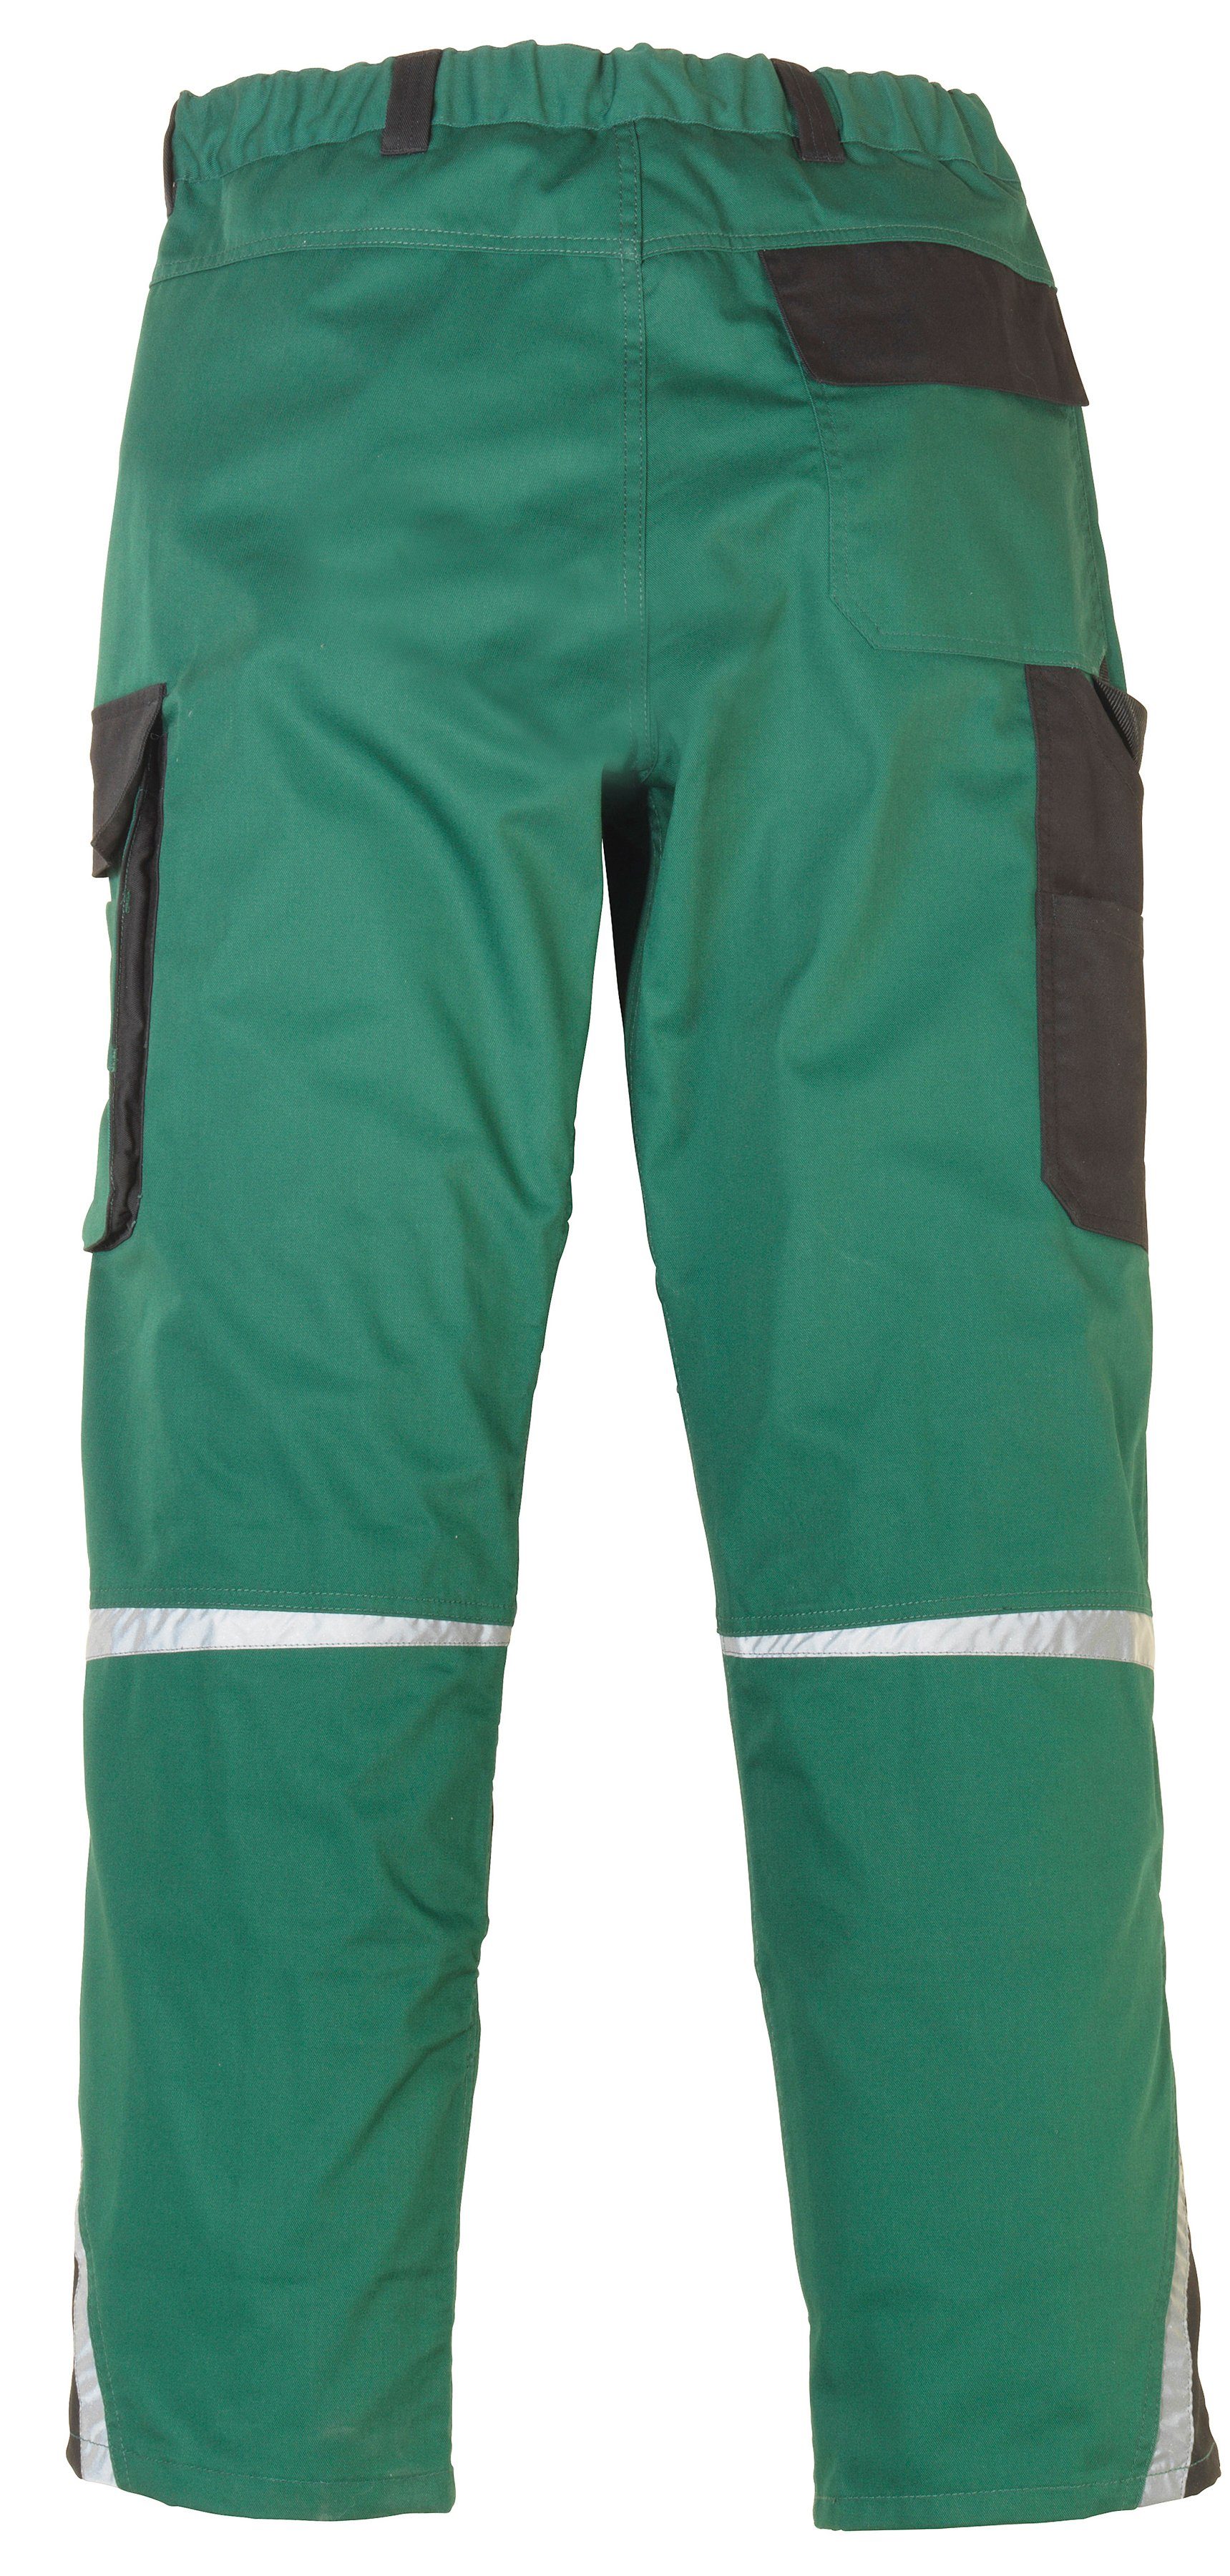 safety& more Arbeitshose Pull mit Knieverstärkung grün-schwarz